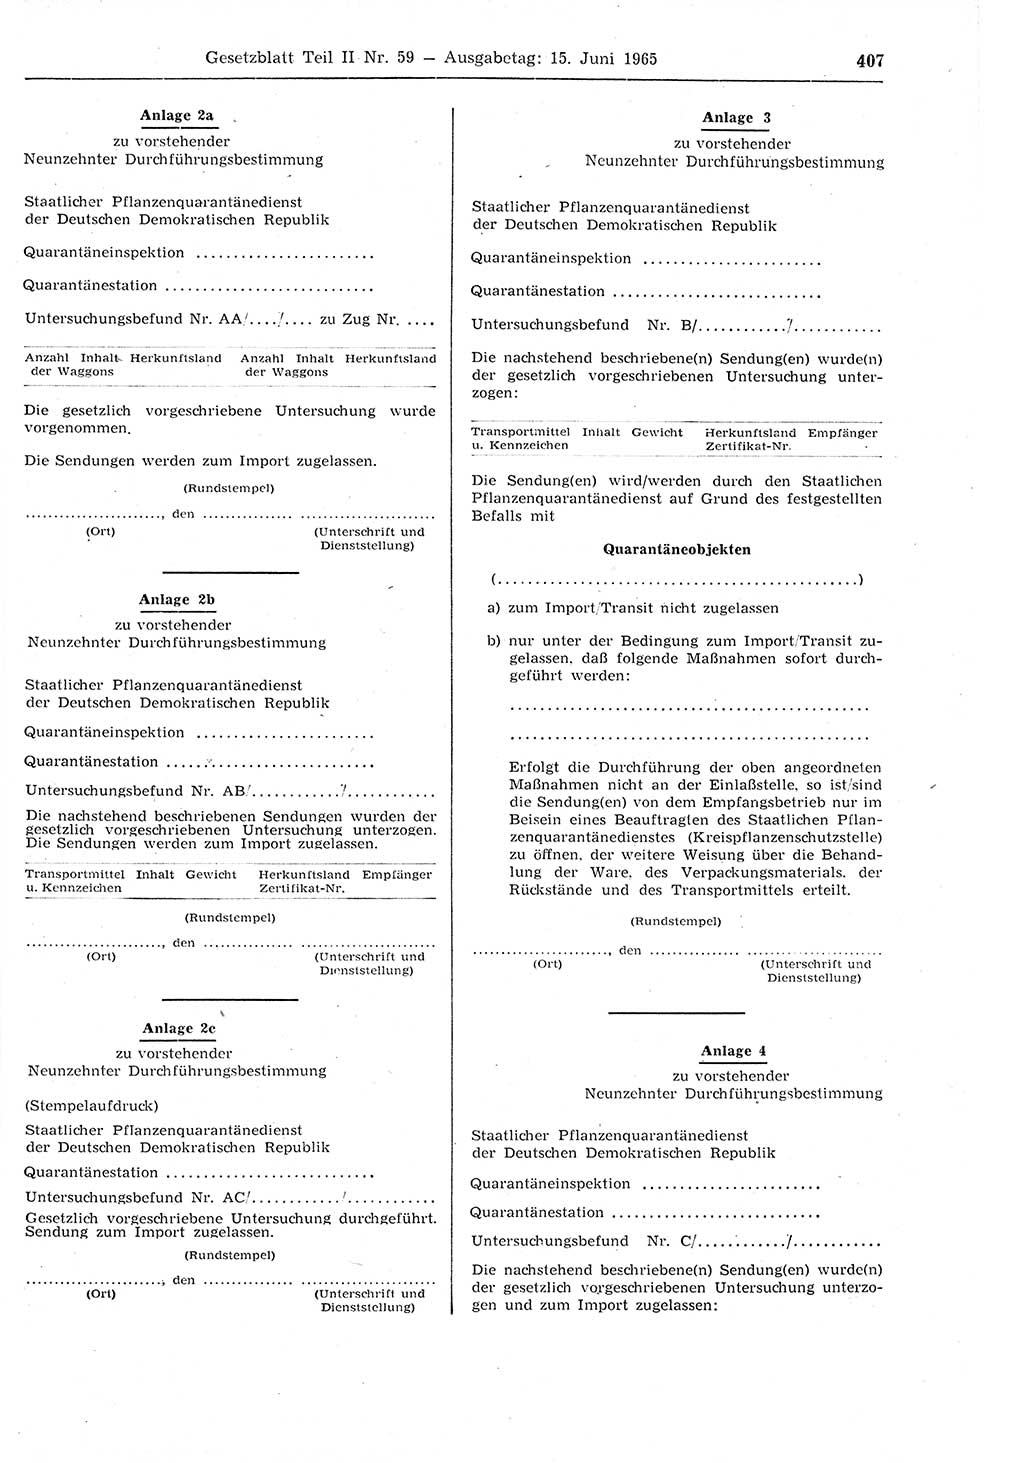 Gesetzblatt (GBl.) der Deutschen Demokratischen Republik (DDR) Teil ⅠⅠ 1965, Seite 407 (GBl. DDR ⅠⅠ 1965, S. 407)